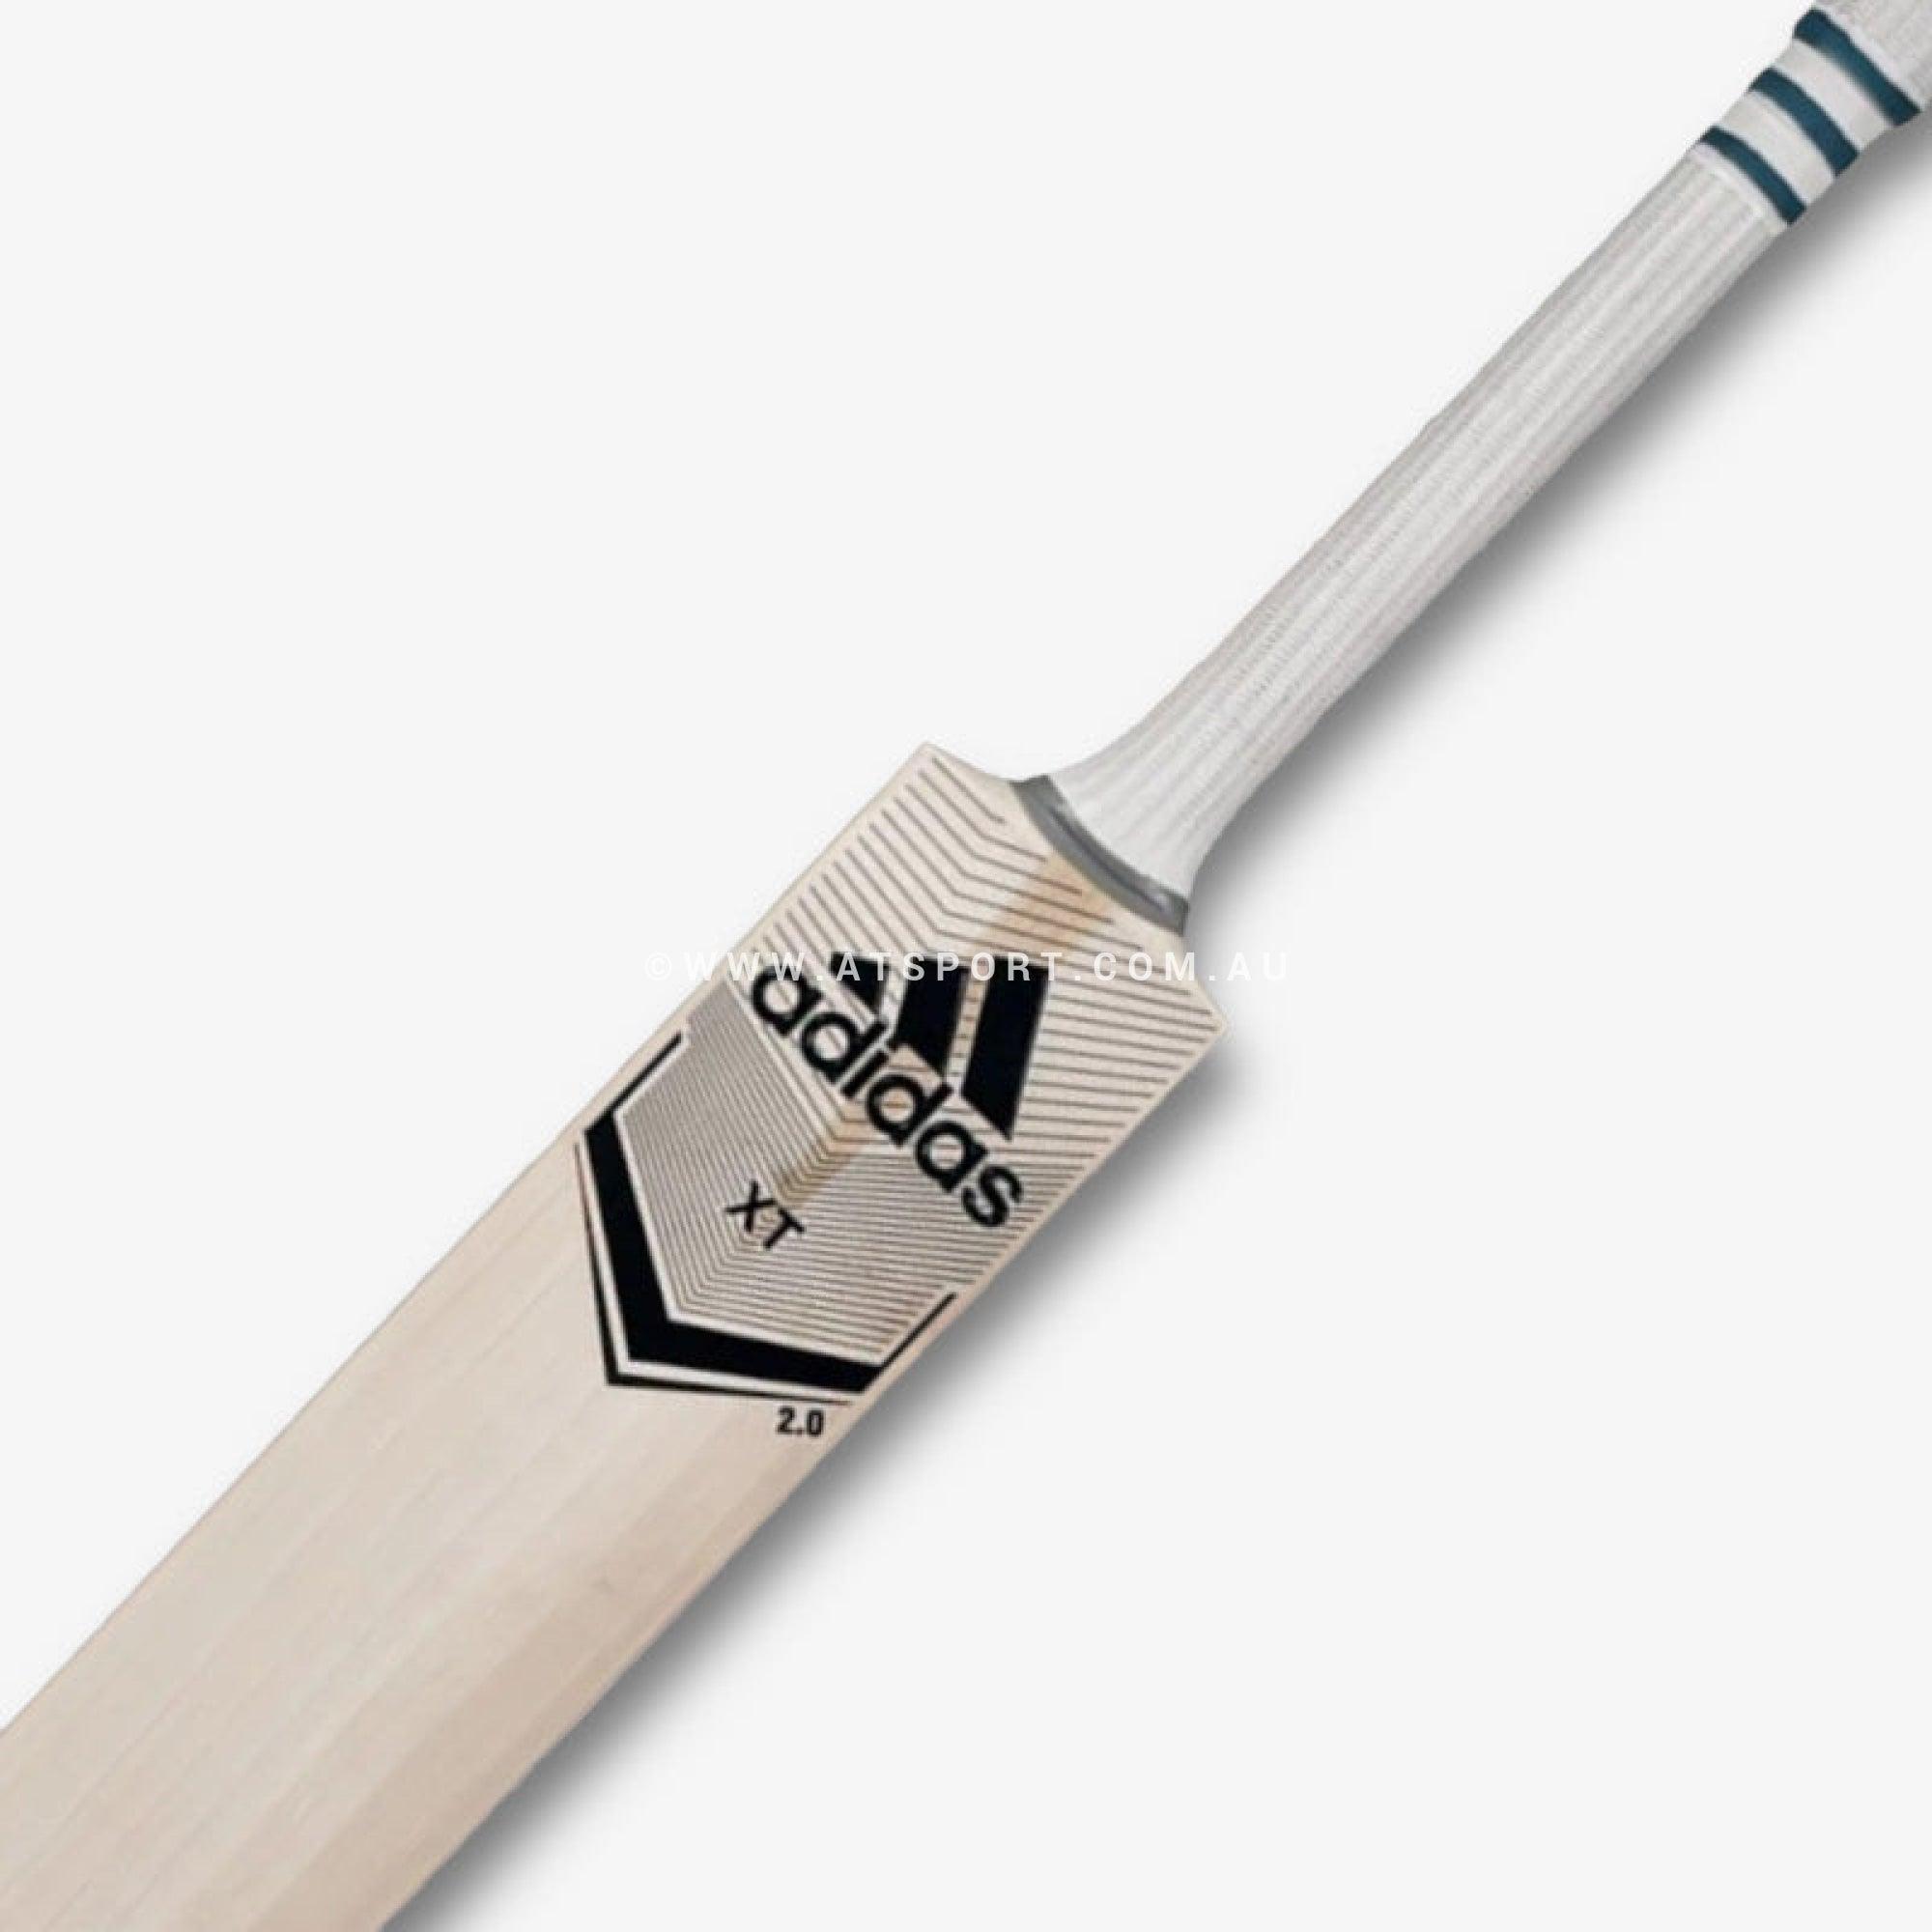 Adidas XT Clear 1.0 English Willow Cricket Bat - H - AT Sports